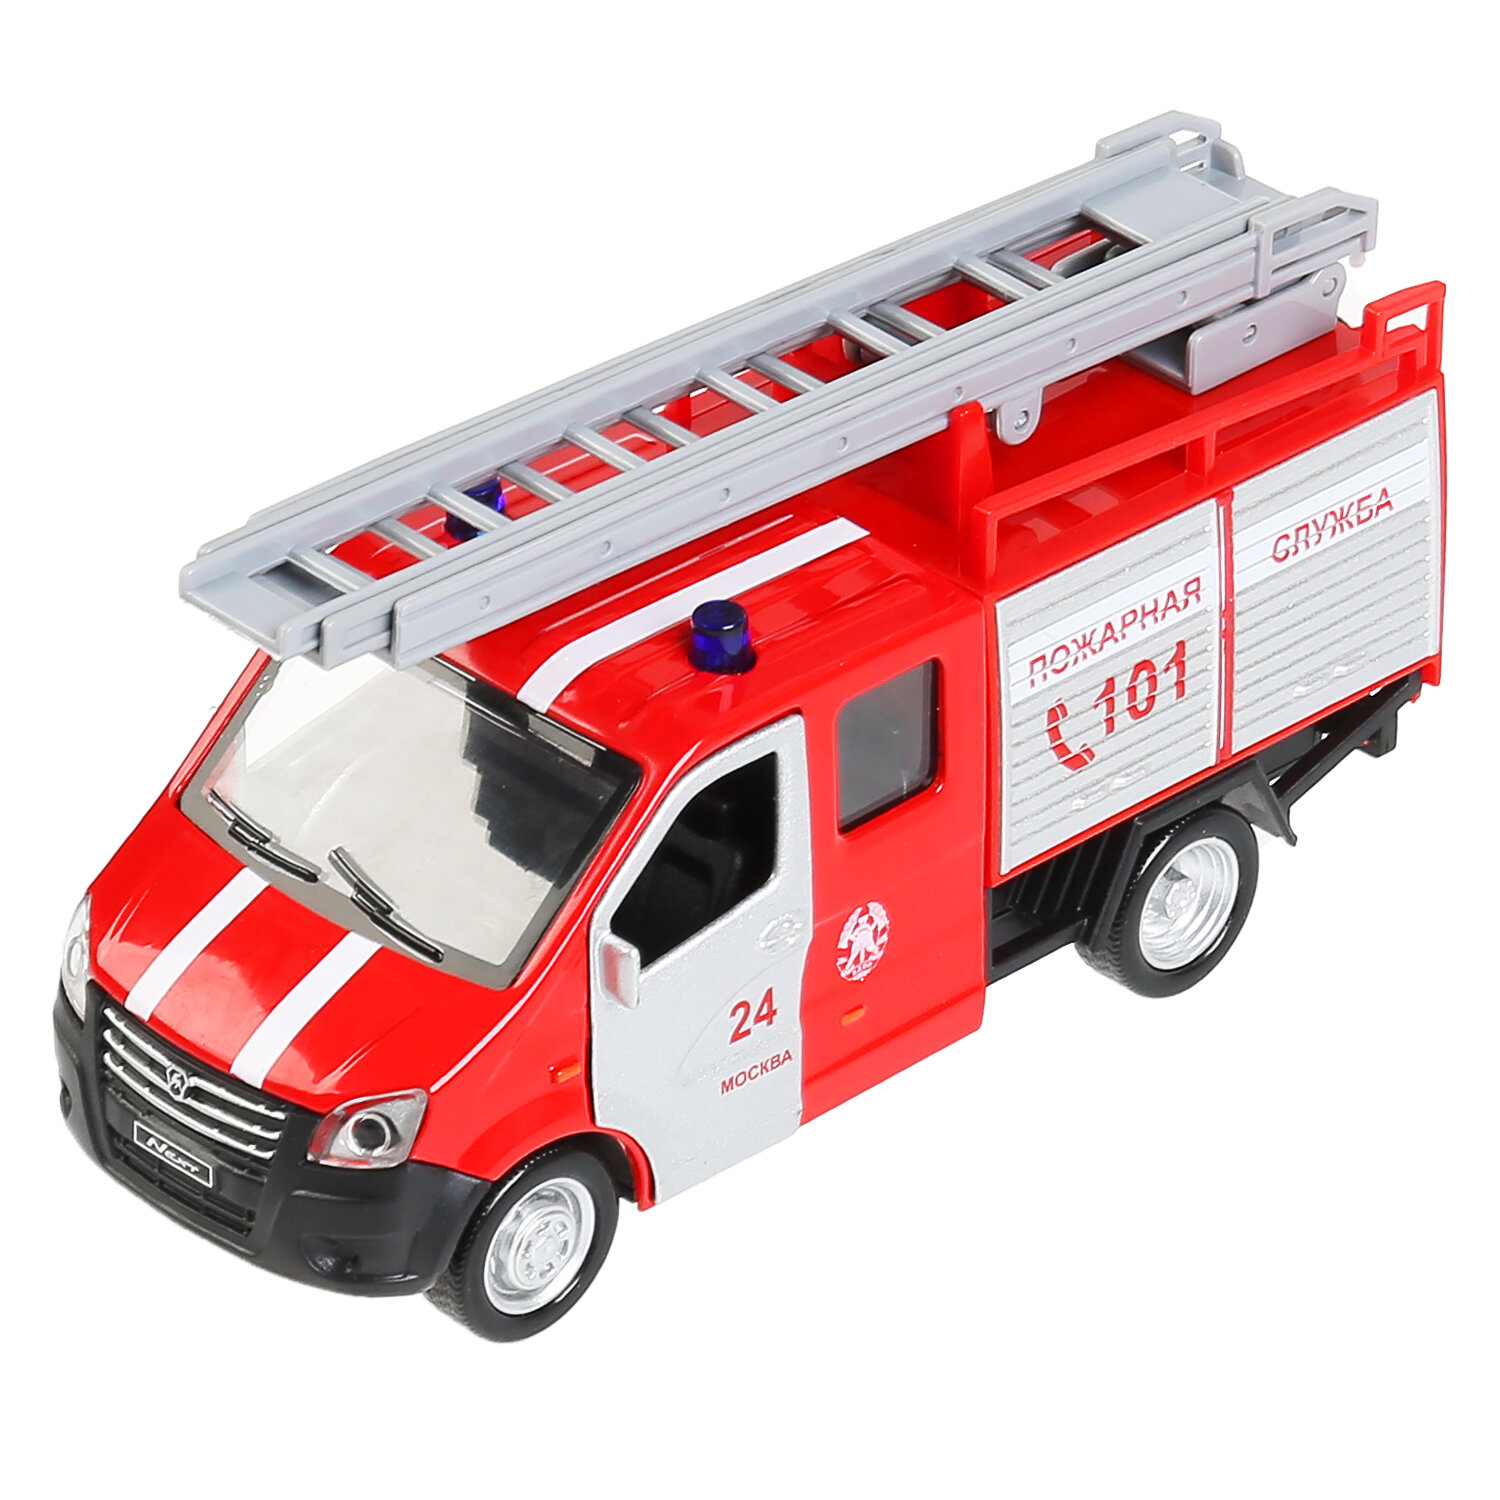 Машинка игрушка детская для мальчика Газель Некст Пожарная Технопарк модель металлическая коллекционная инерционная с открывающимися дверьми 15 см